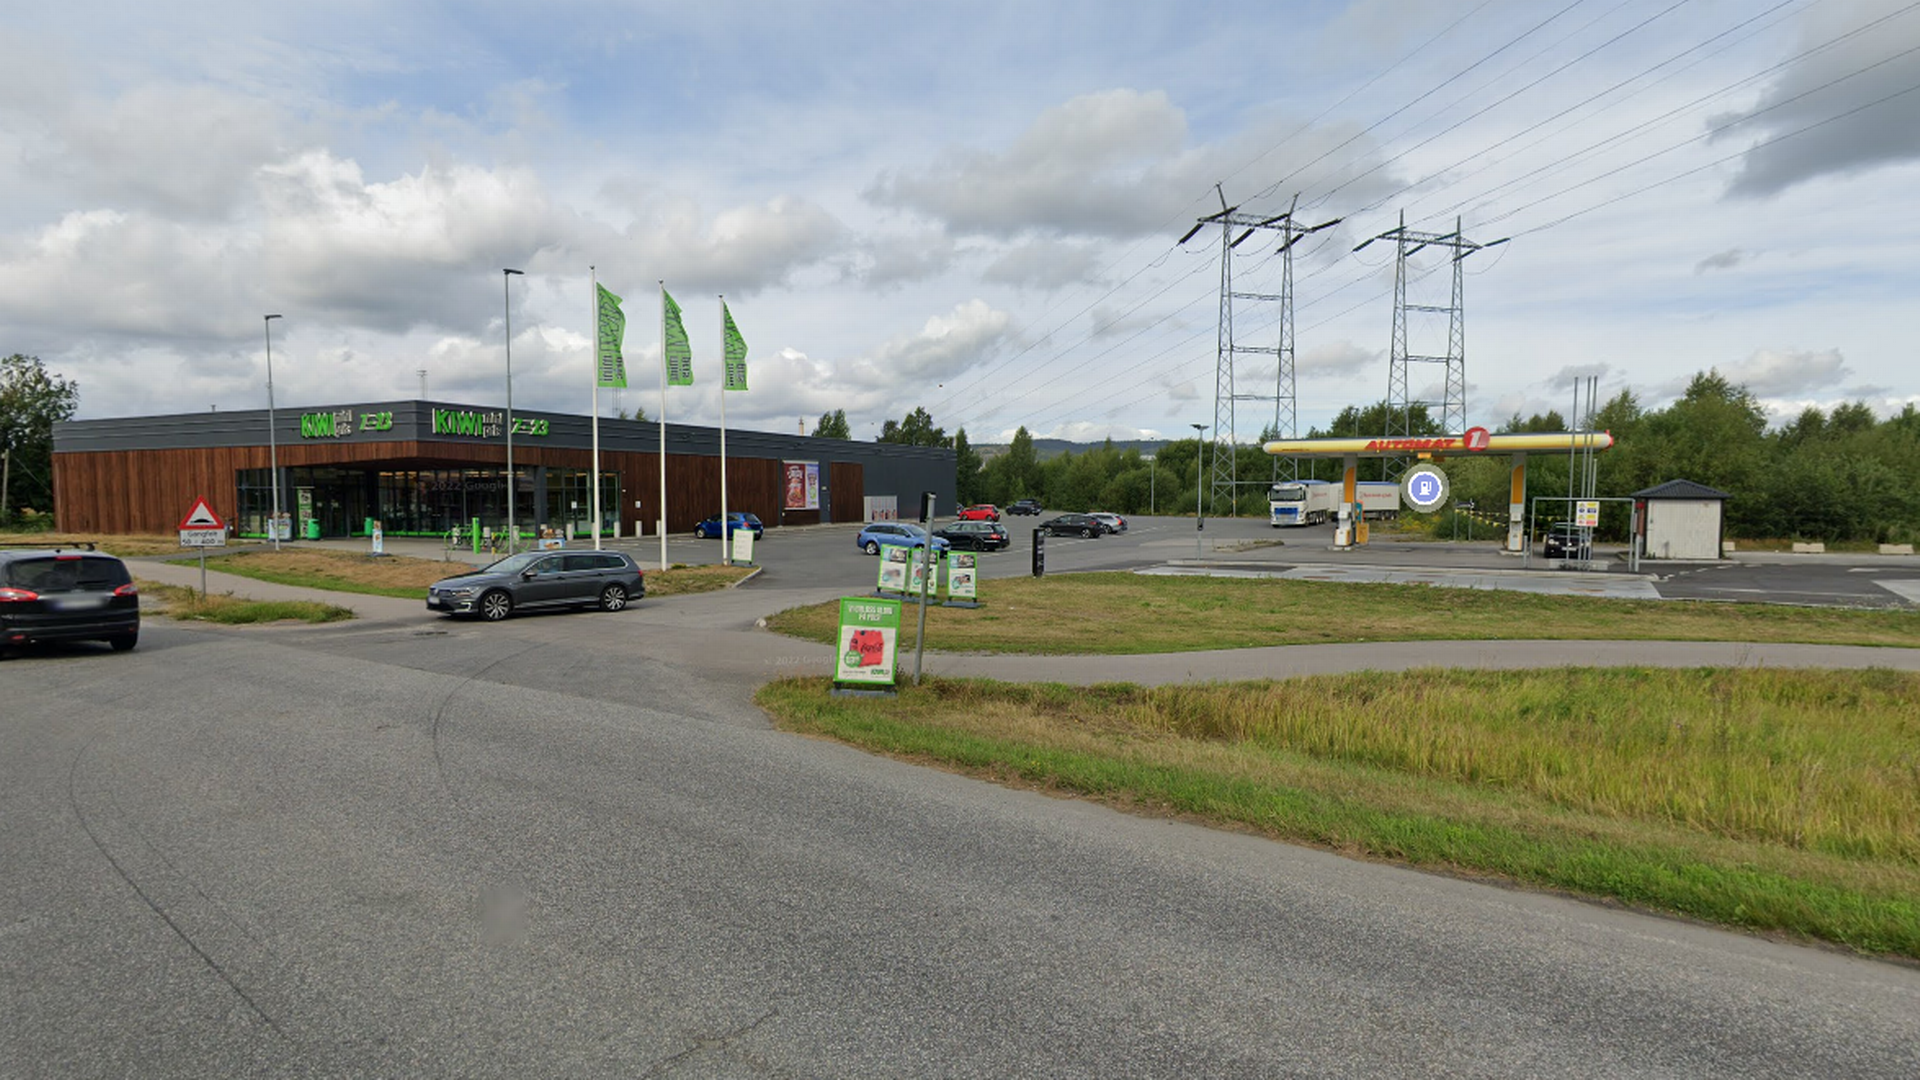 Her vil Grenmar Eiendomsforvaltning ha Europris, noe som foreløpig har møtt motstand fra kommuneadministrasjonen. | Foto: Google Street View